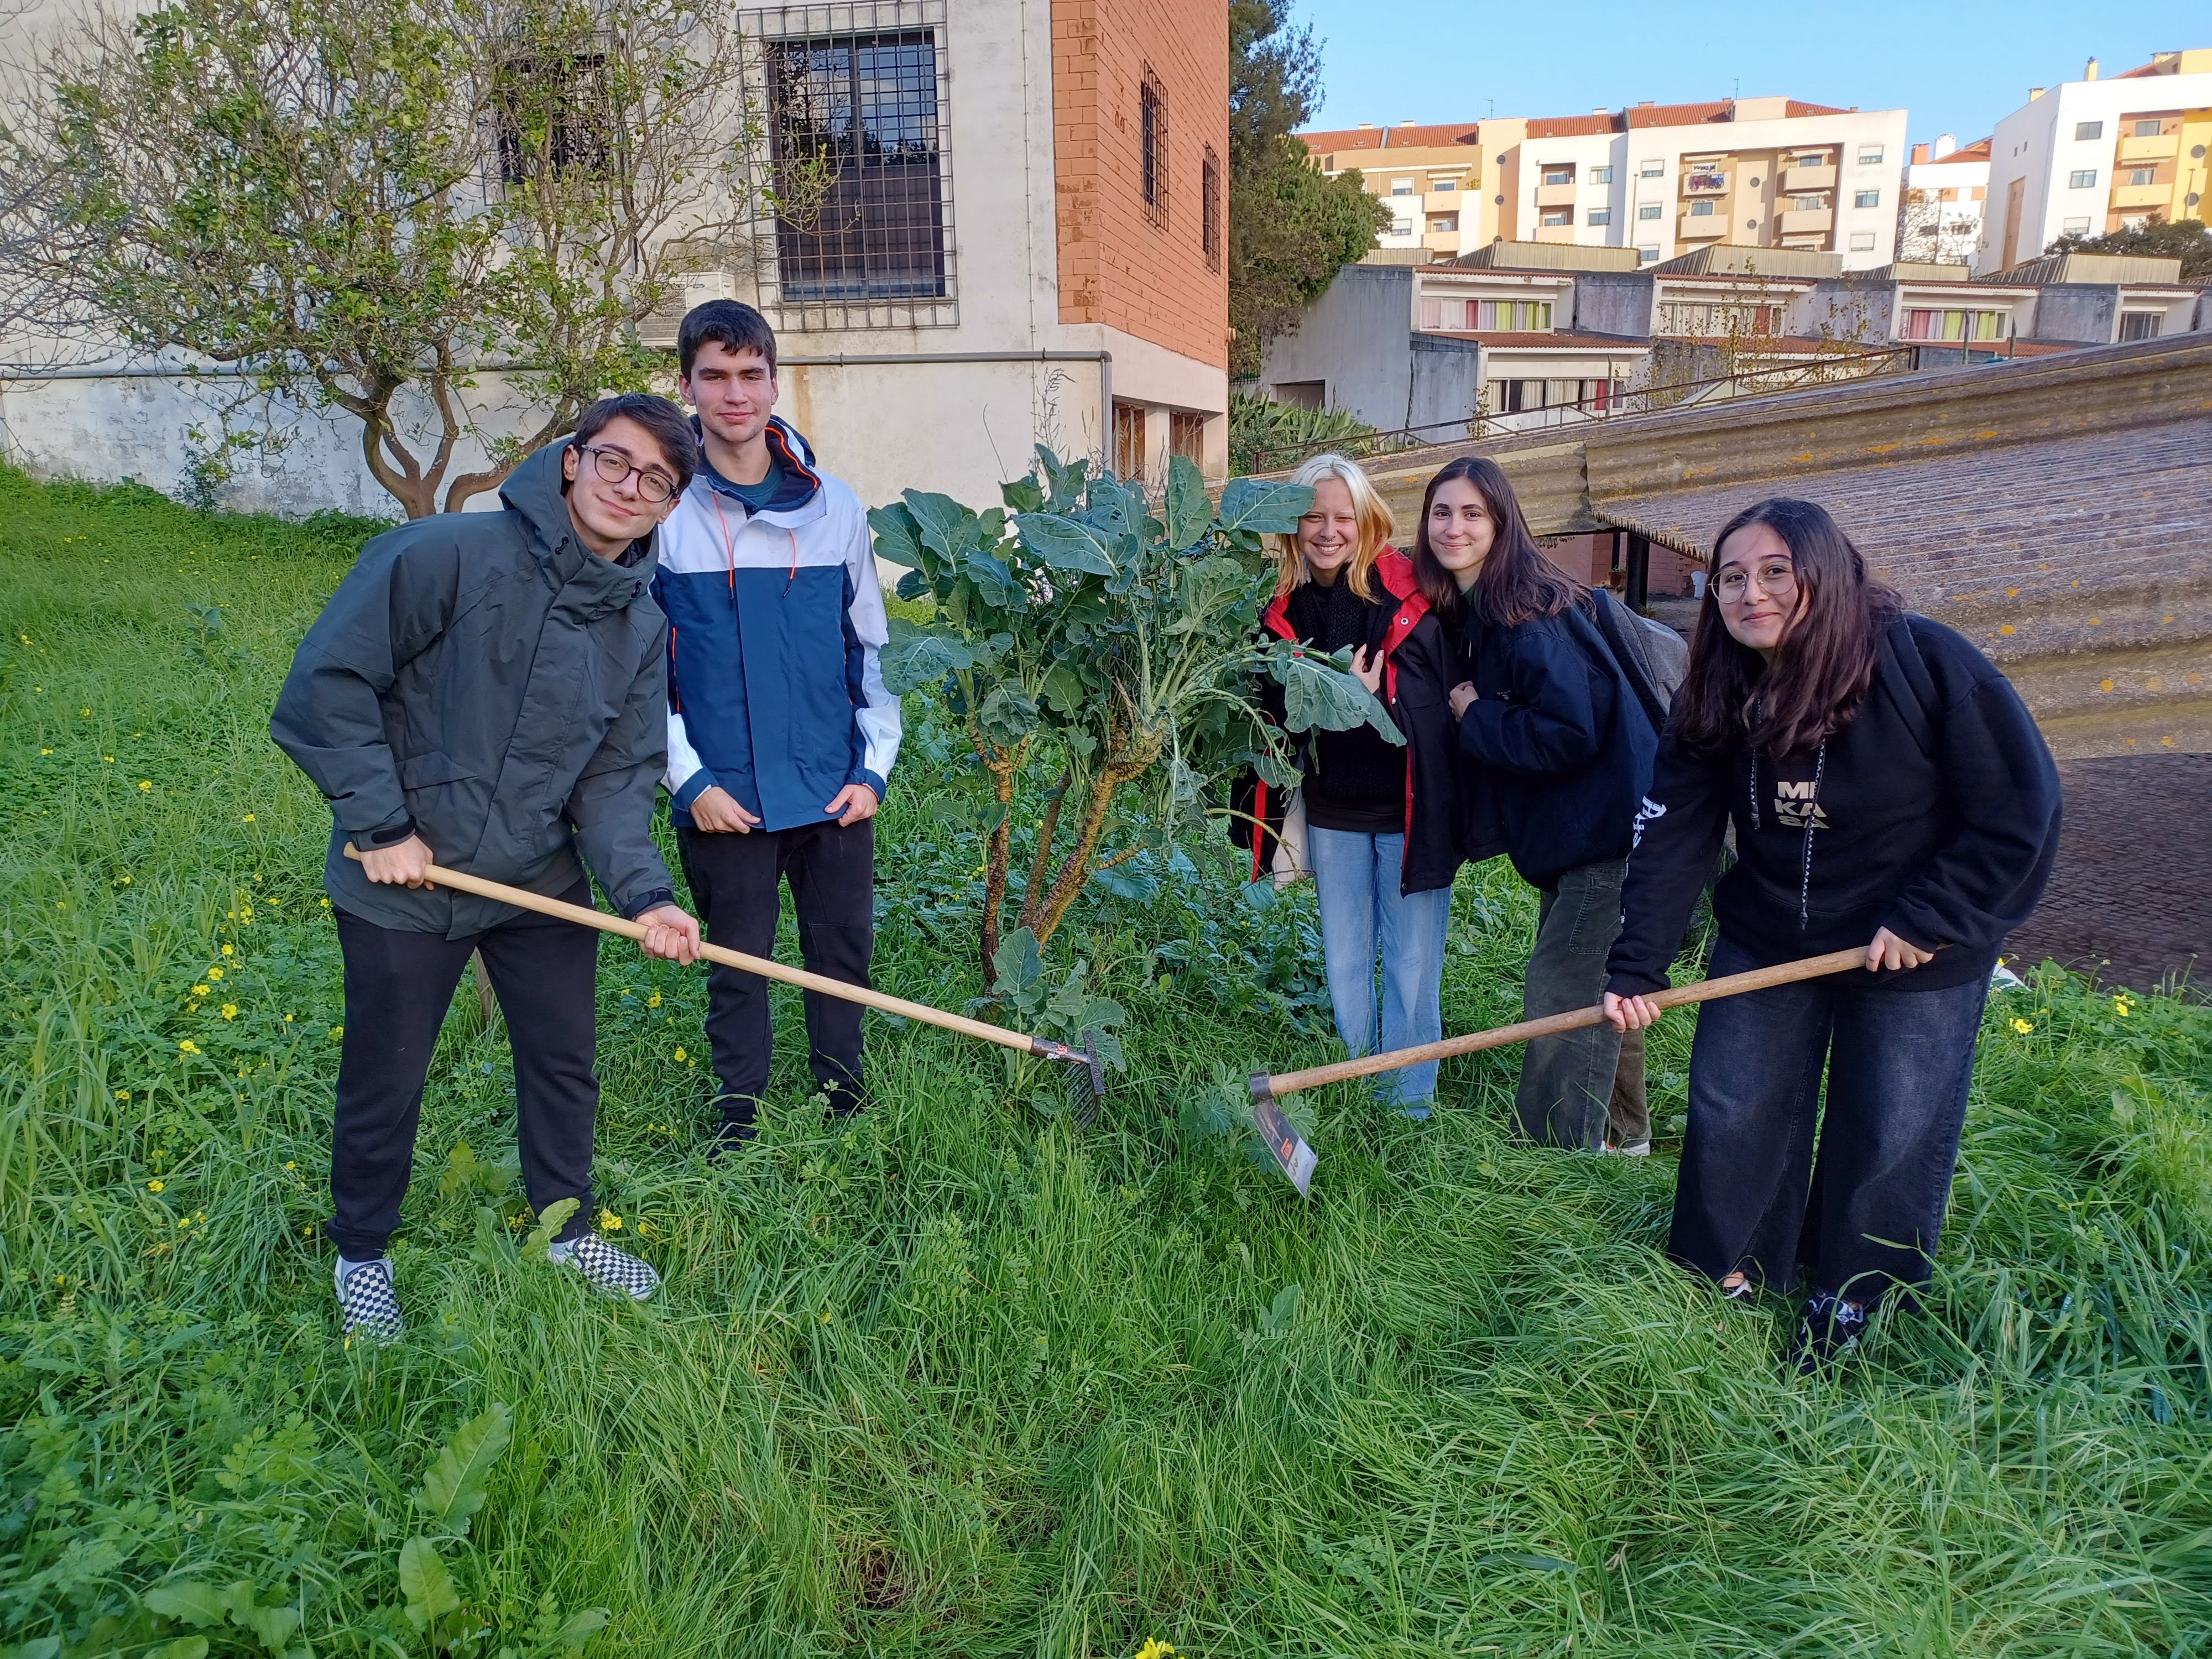 Grupo de alunos promotor do projeto "Horta Para Todos!", uma horta biológica solidária para cultivar e doar produtos agrícolas a famílias carenciadas do Agrupamento de Escolas de Casquilhos.